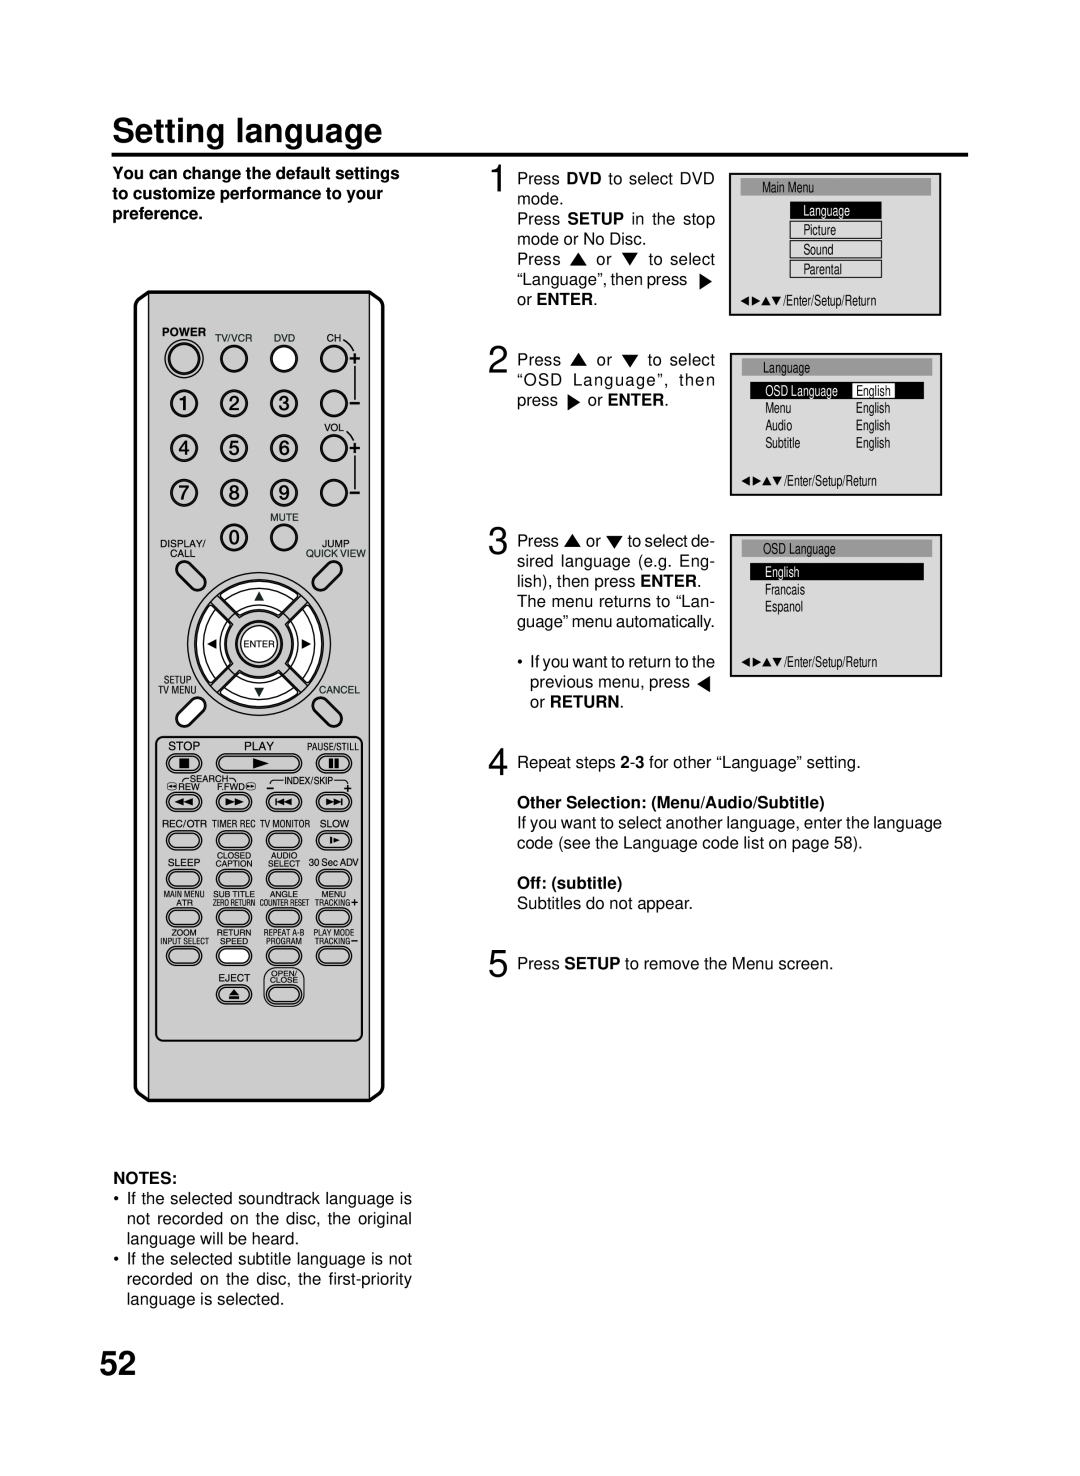 RCA 27F500TDV manual Setting language, Other Selection Menu/Audio/Subtitle, Off subtitle 